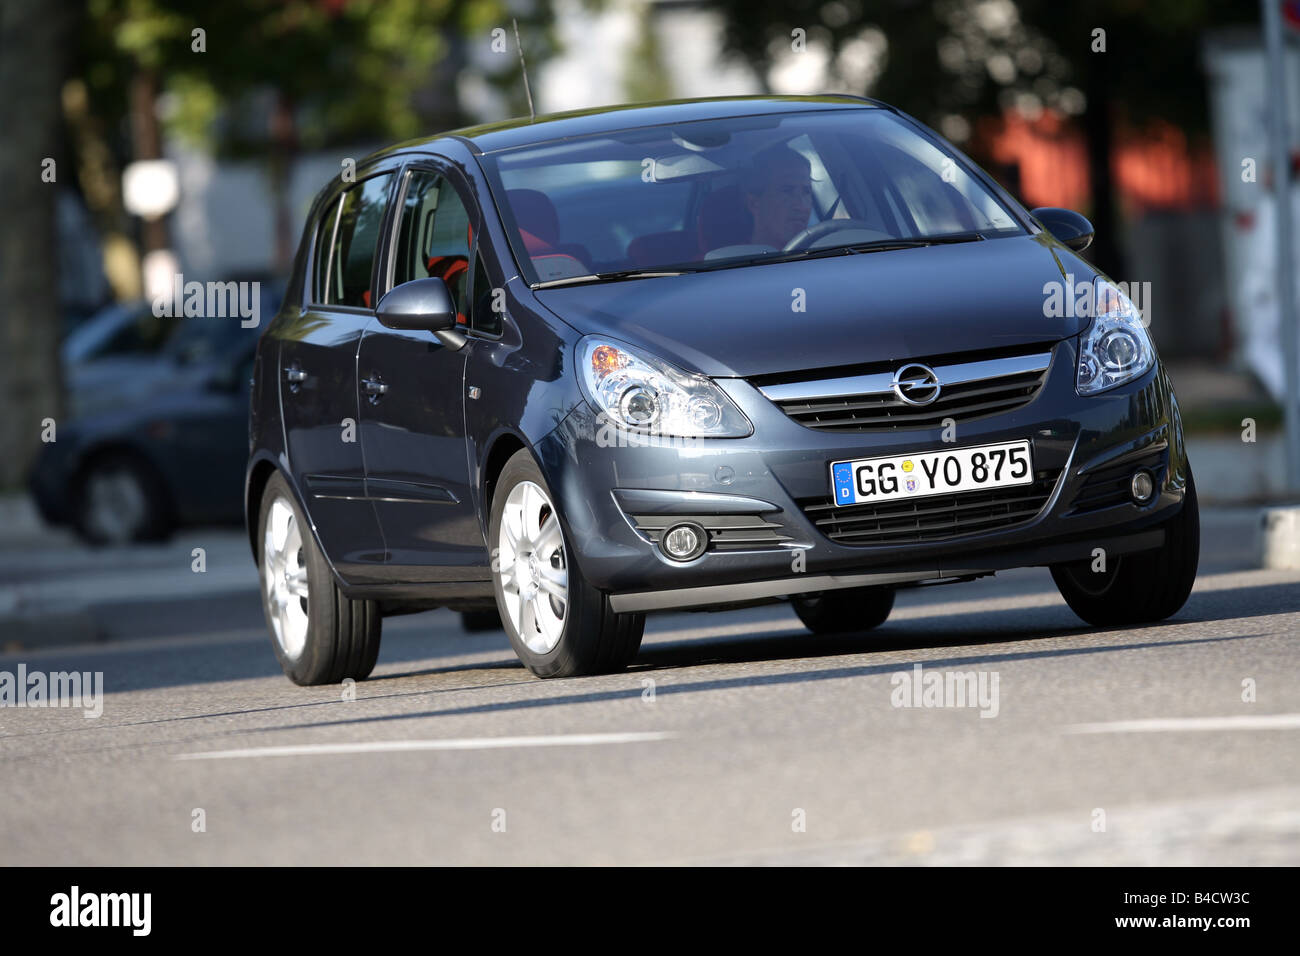 File:Opel Corsa D OPC front.JPG - Wikipedia